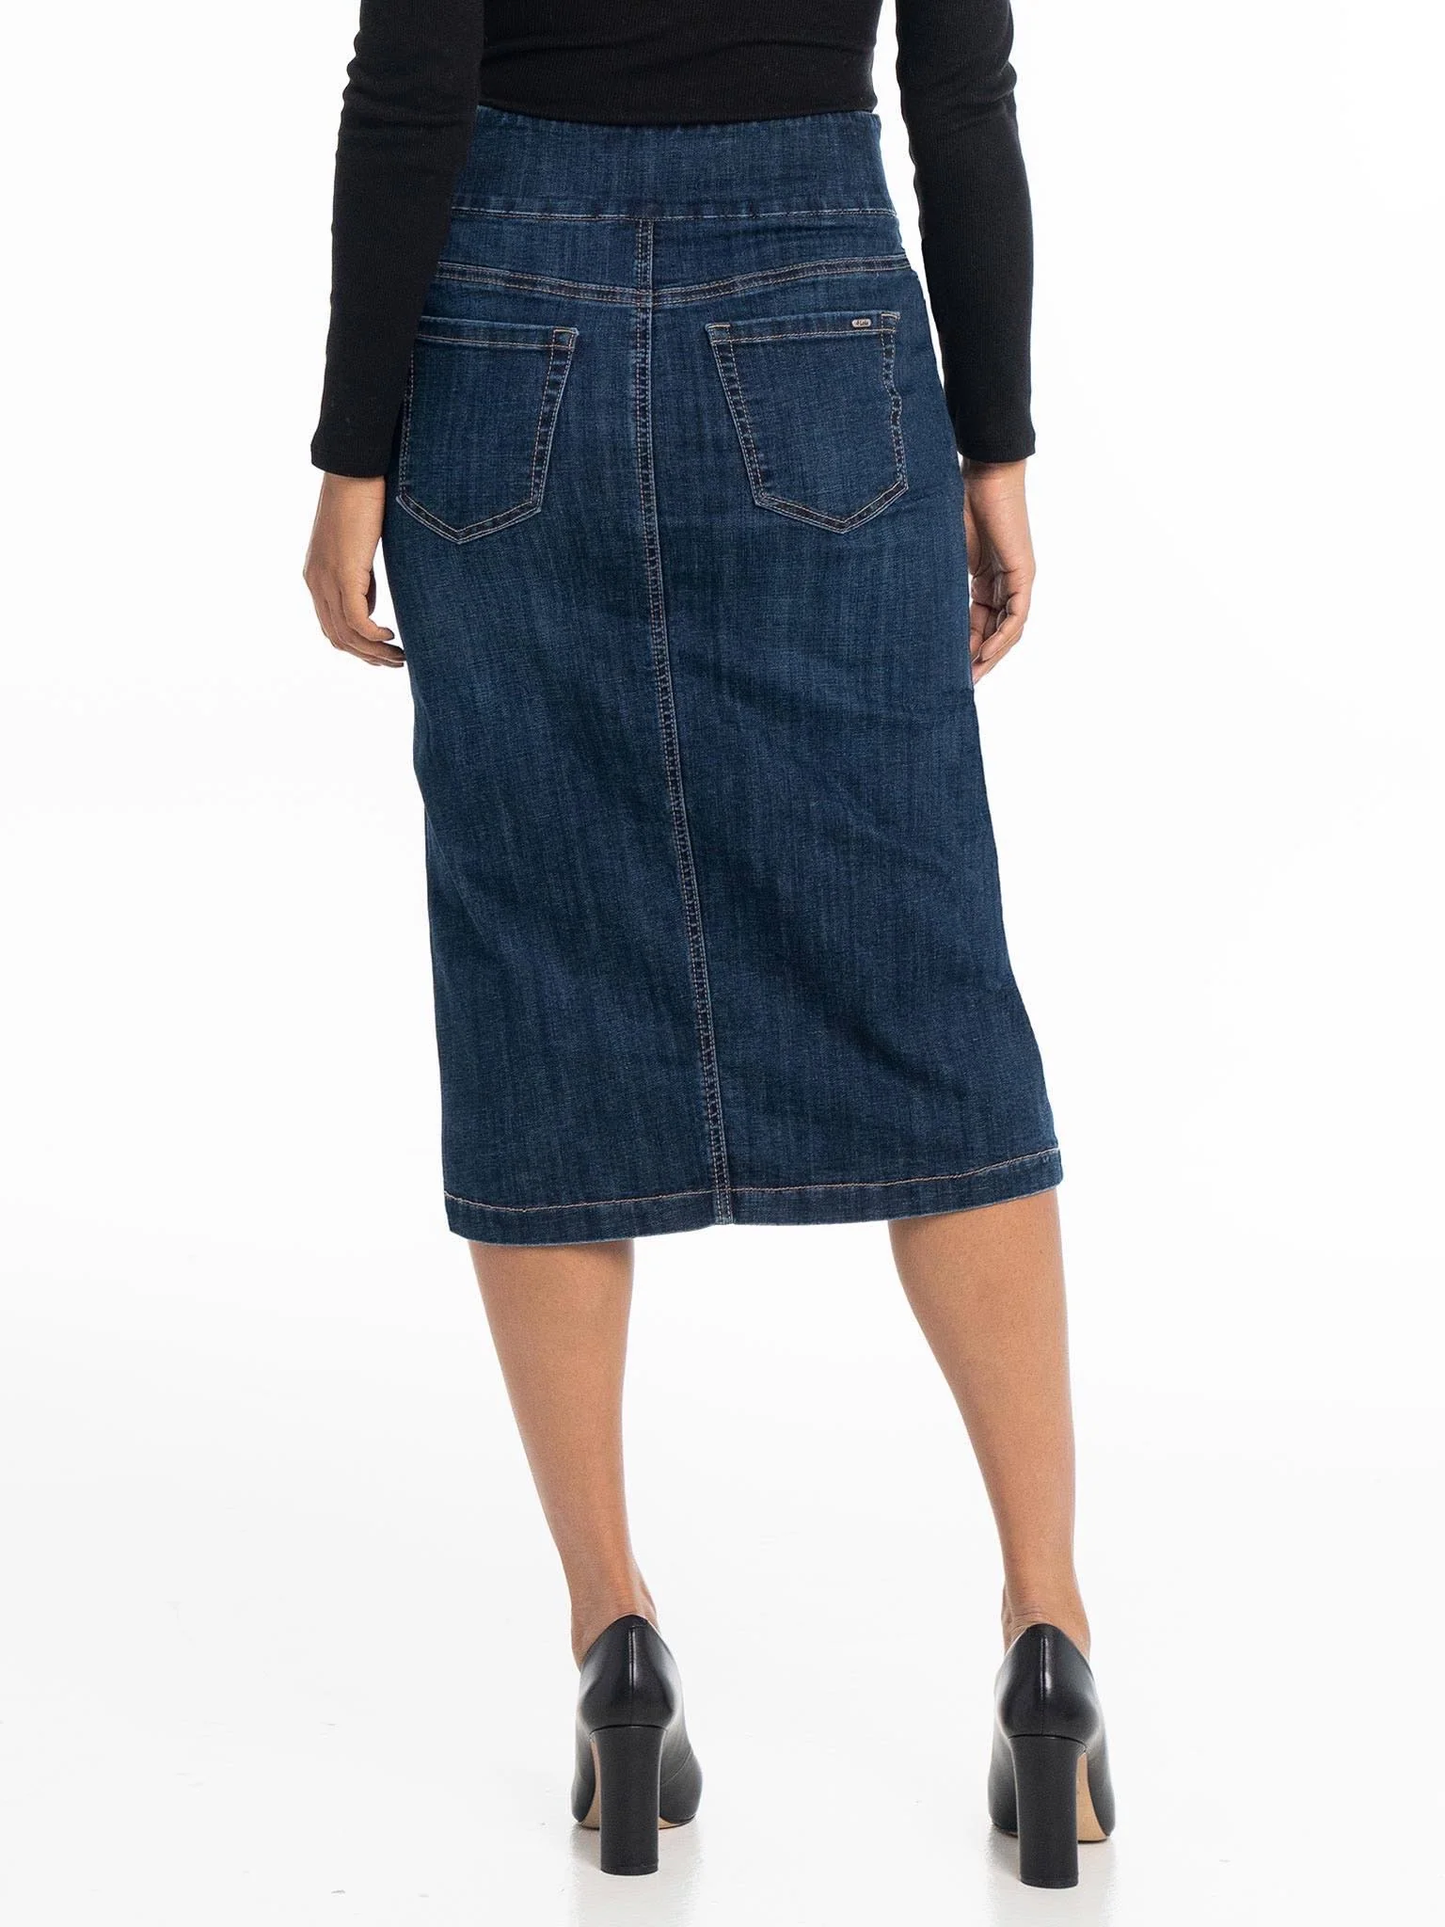 Lois - LOUISA skirt